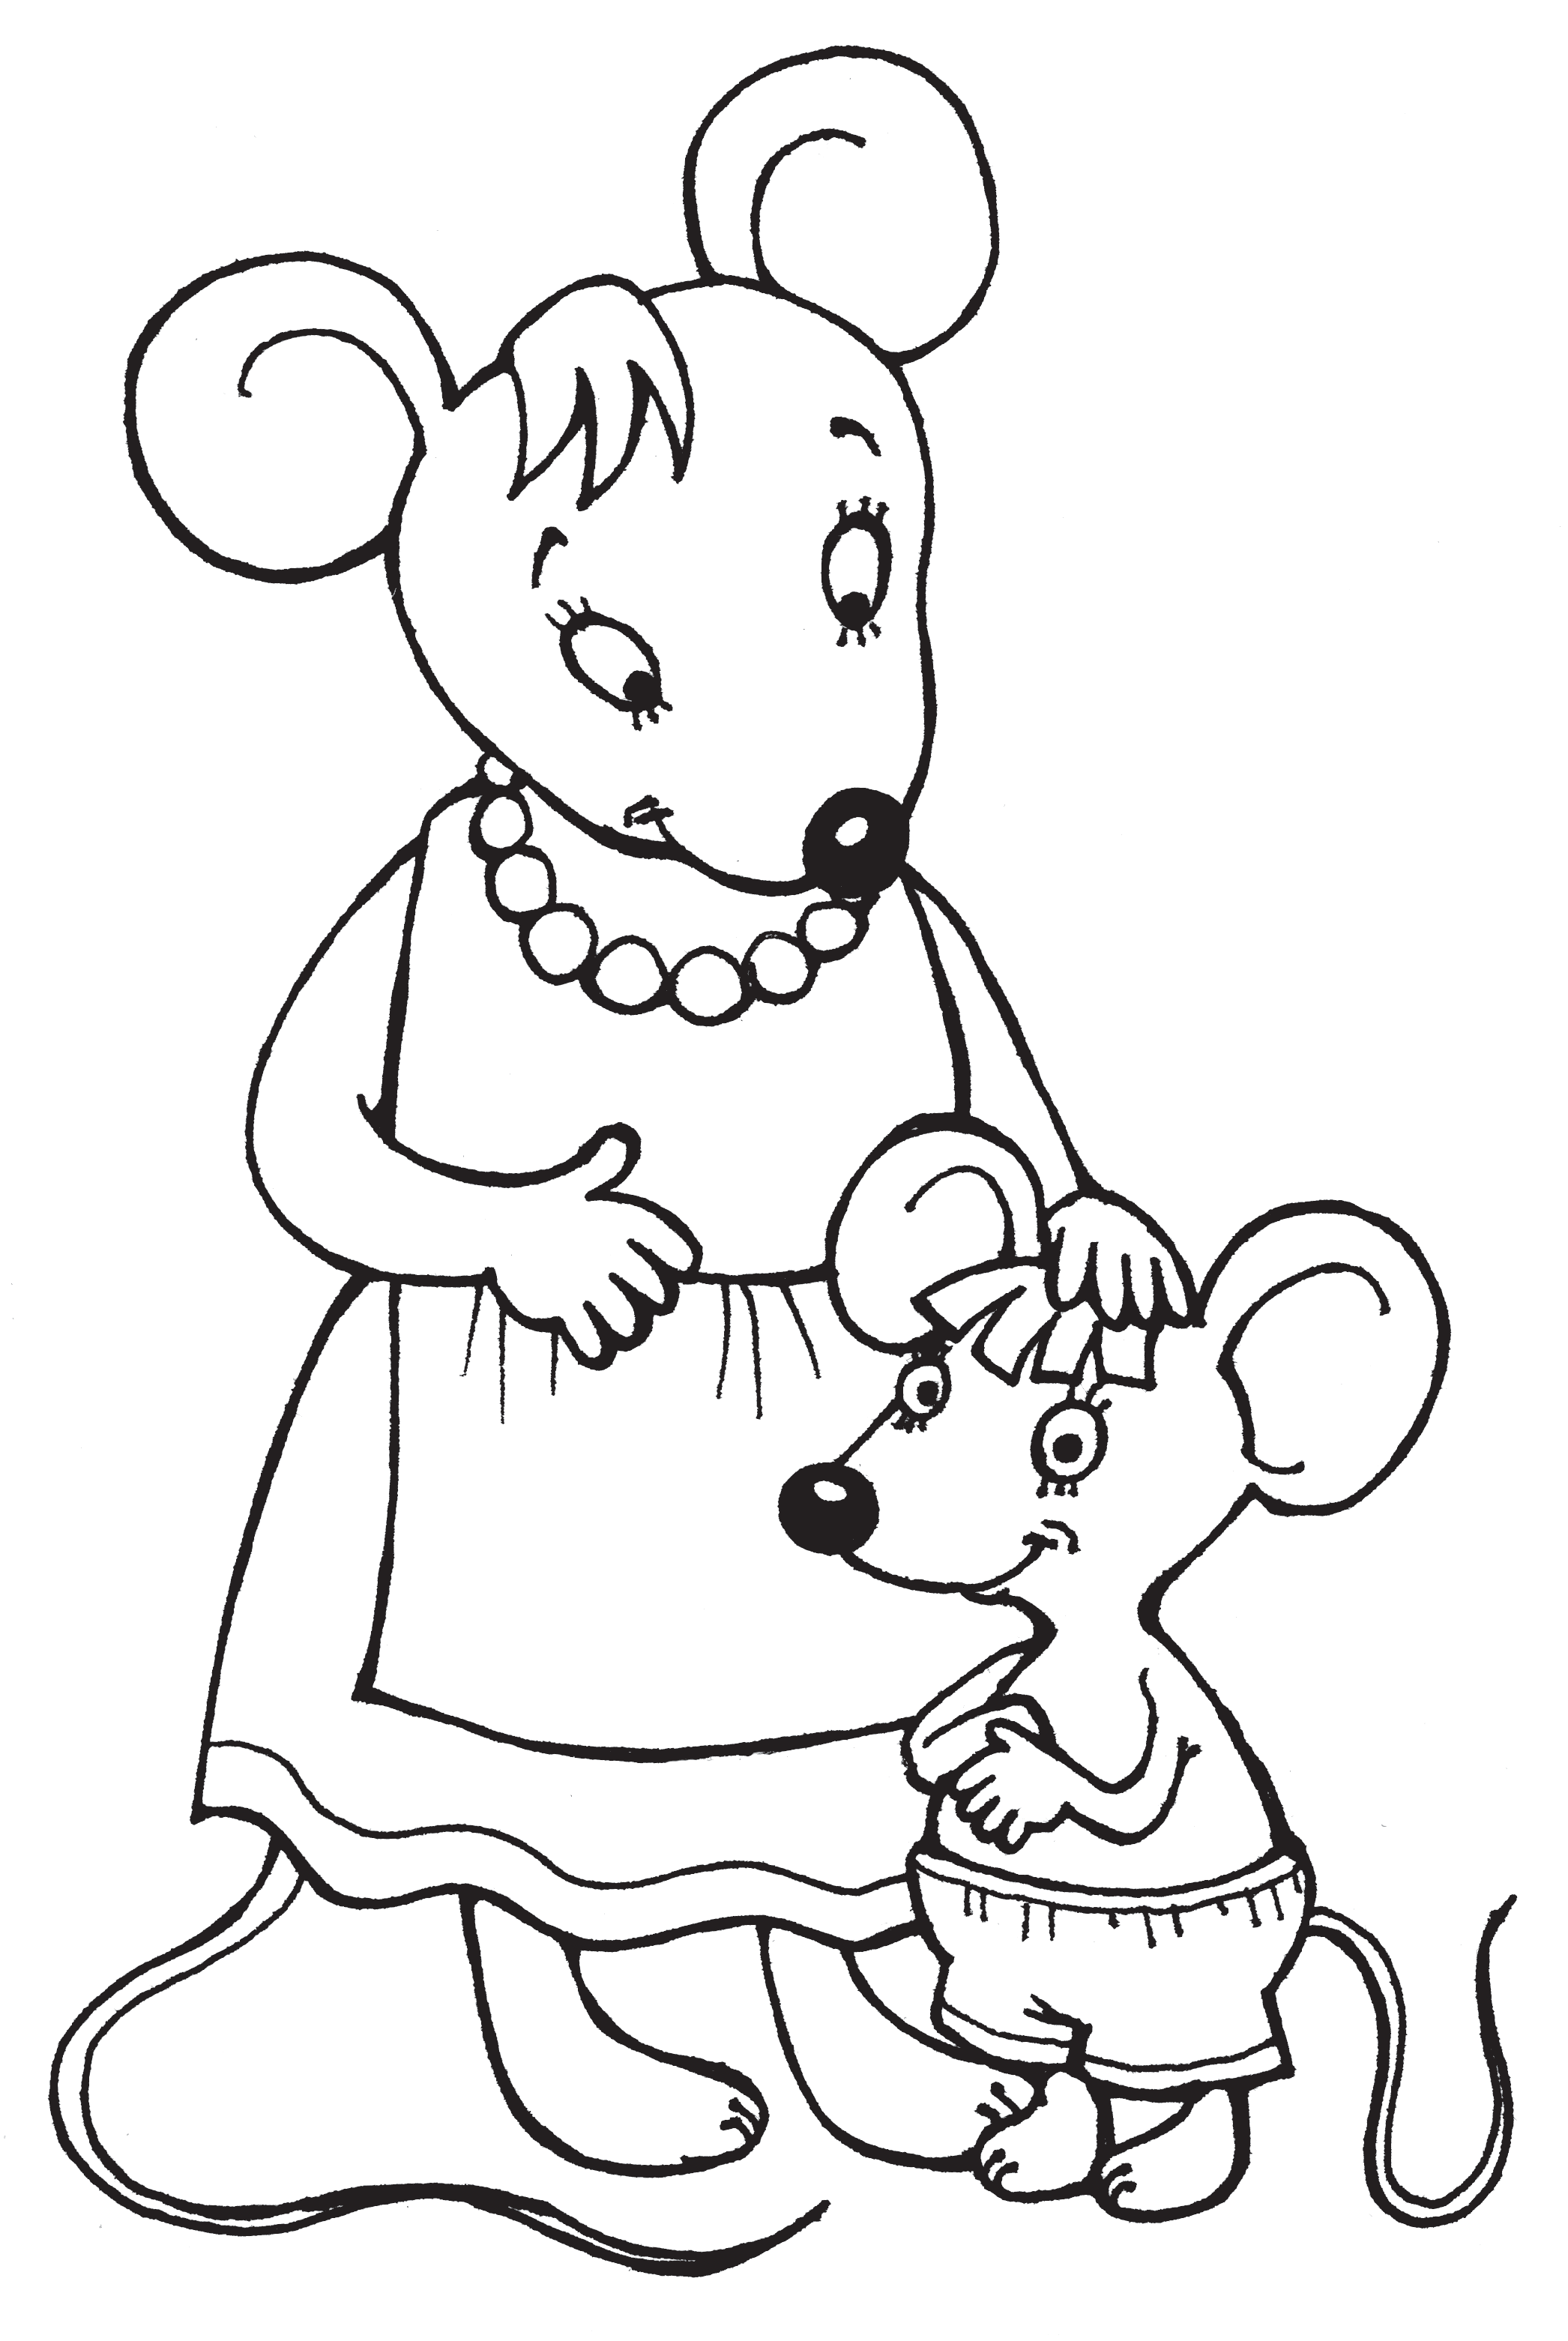 Мышка в сказке о глупом мышонке раскраска. Маршак сказка о глупом мышонке раскраска. Мышка норушка раскраска. Мышь раскраска для детей.